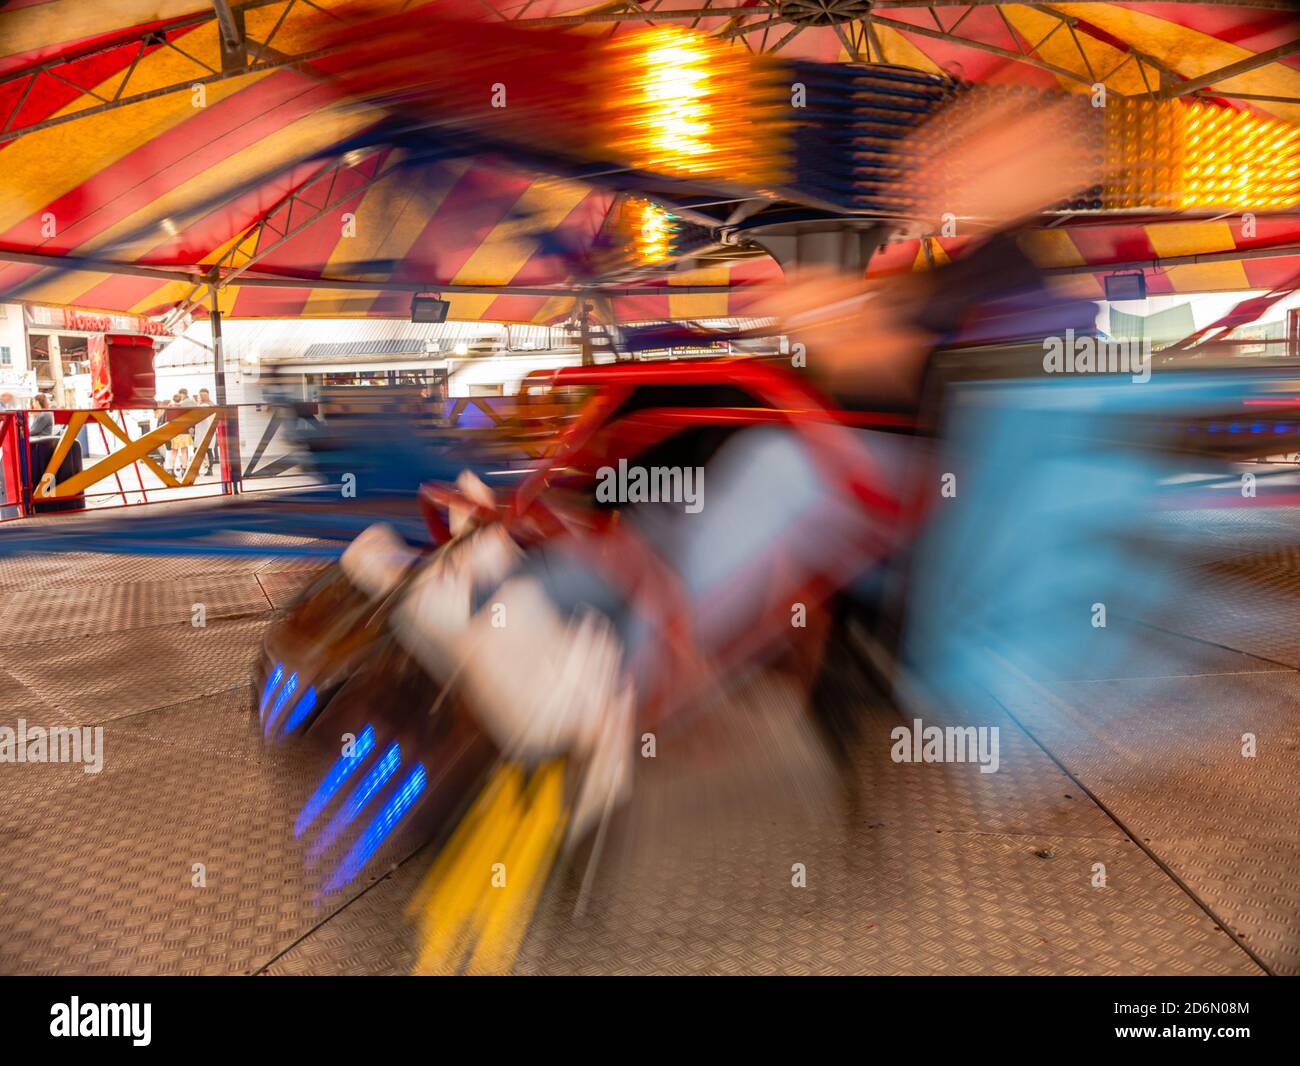 Gira en bicicleta en una máquina de spinning en parque de diversiones Foto de stock